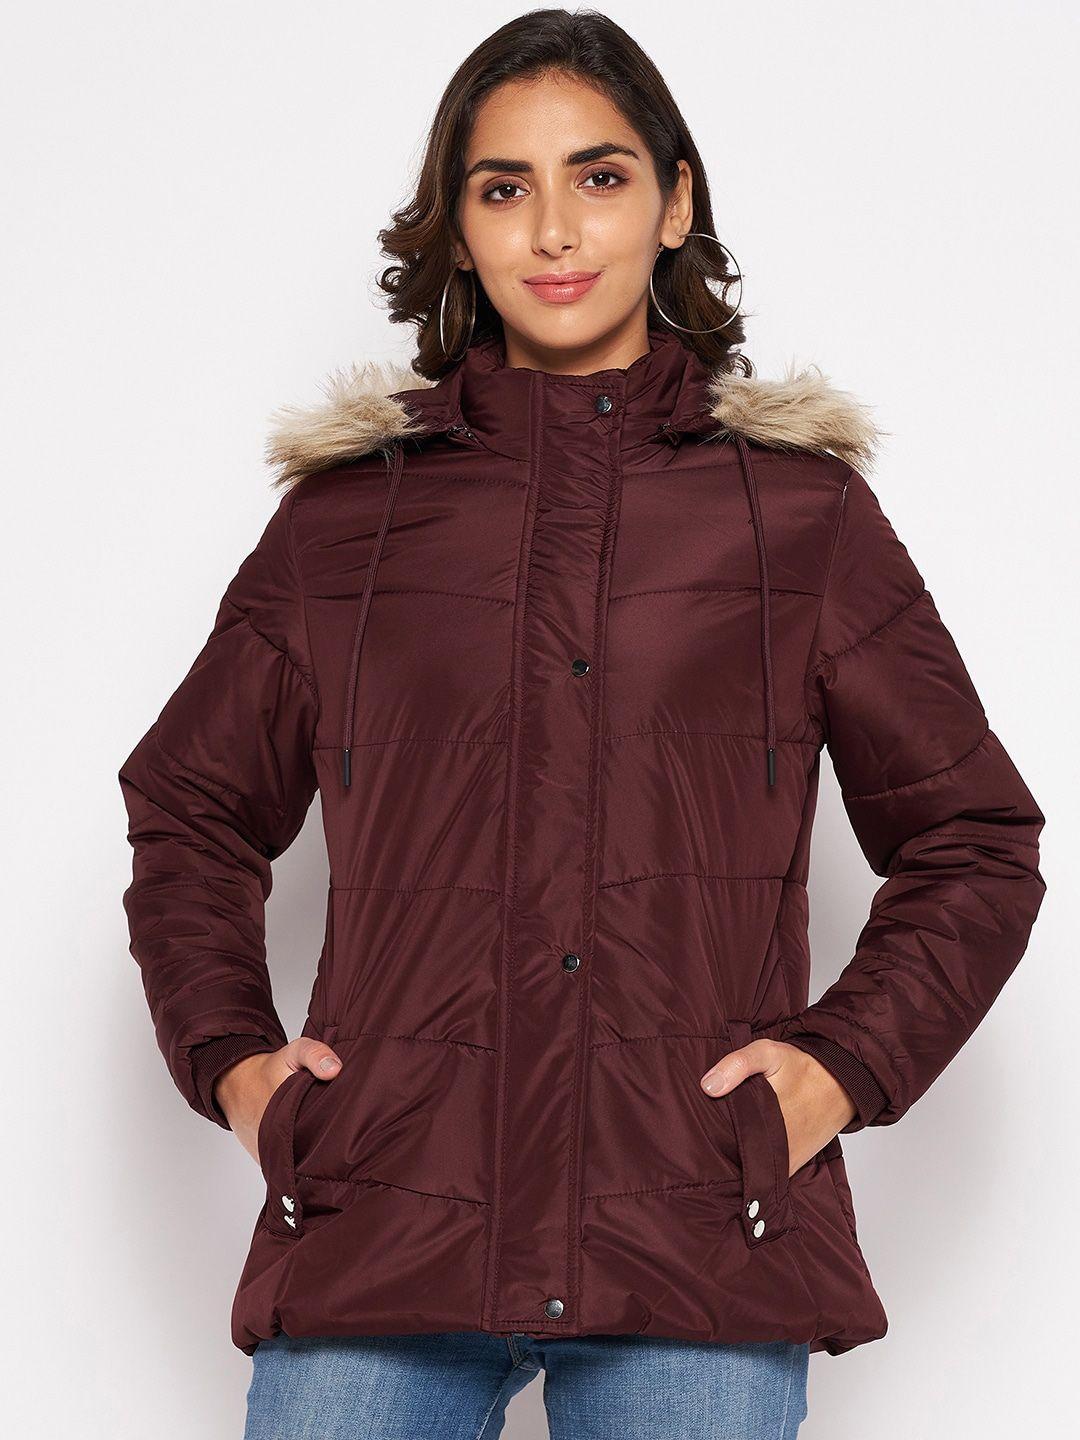 cantabil women maroon longline parka jacket